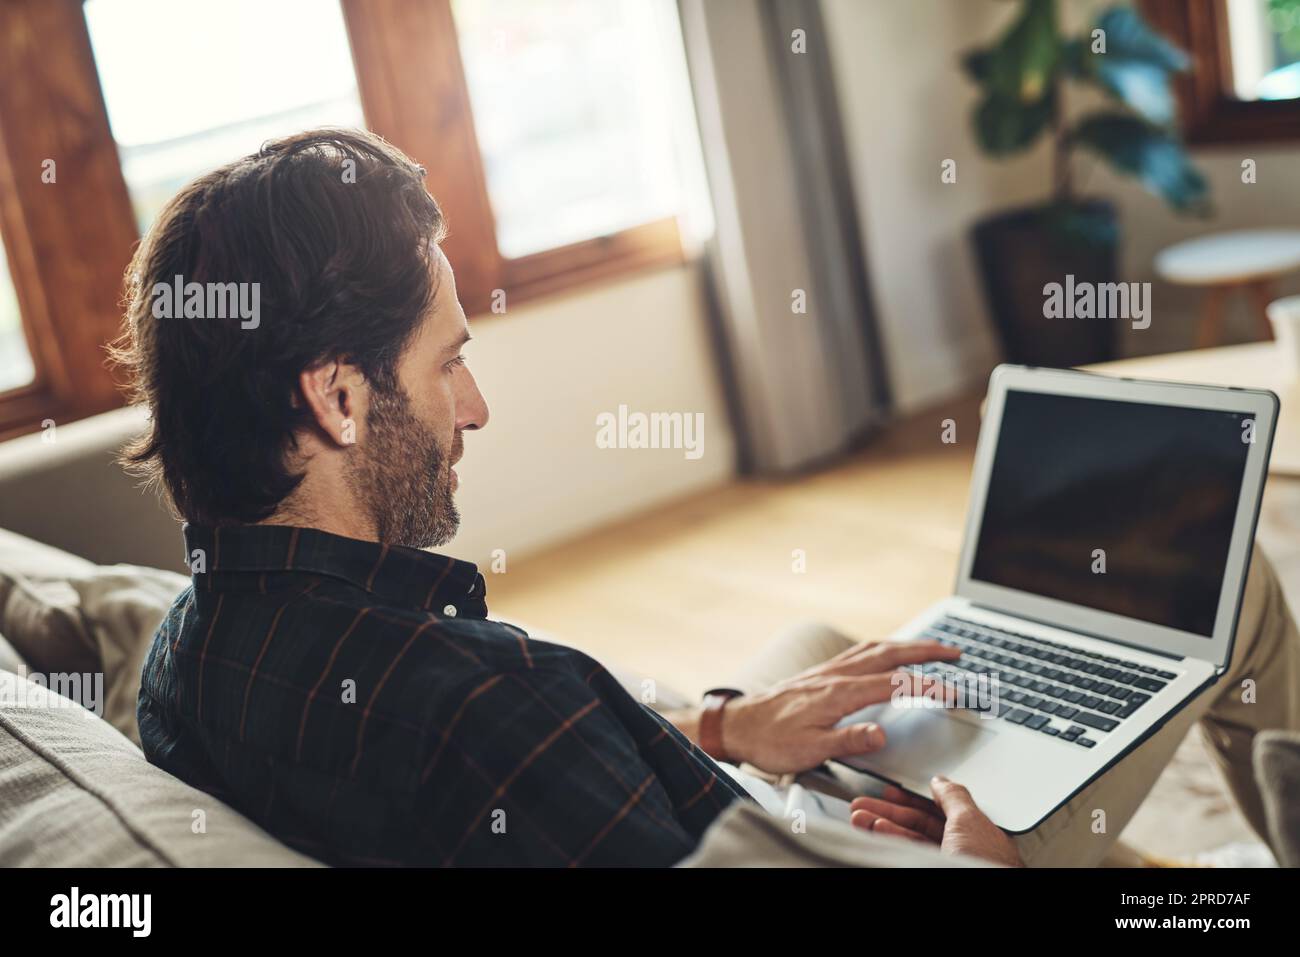 Lassen Sie uns herausfinden, was heute online Trend. Ein hübscher junger Mann mit seinem Laptop, während er sich auf einer Couch zu Hause entspannen. Stockfoto